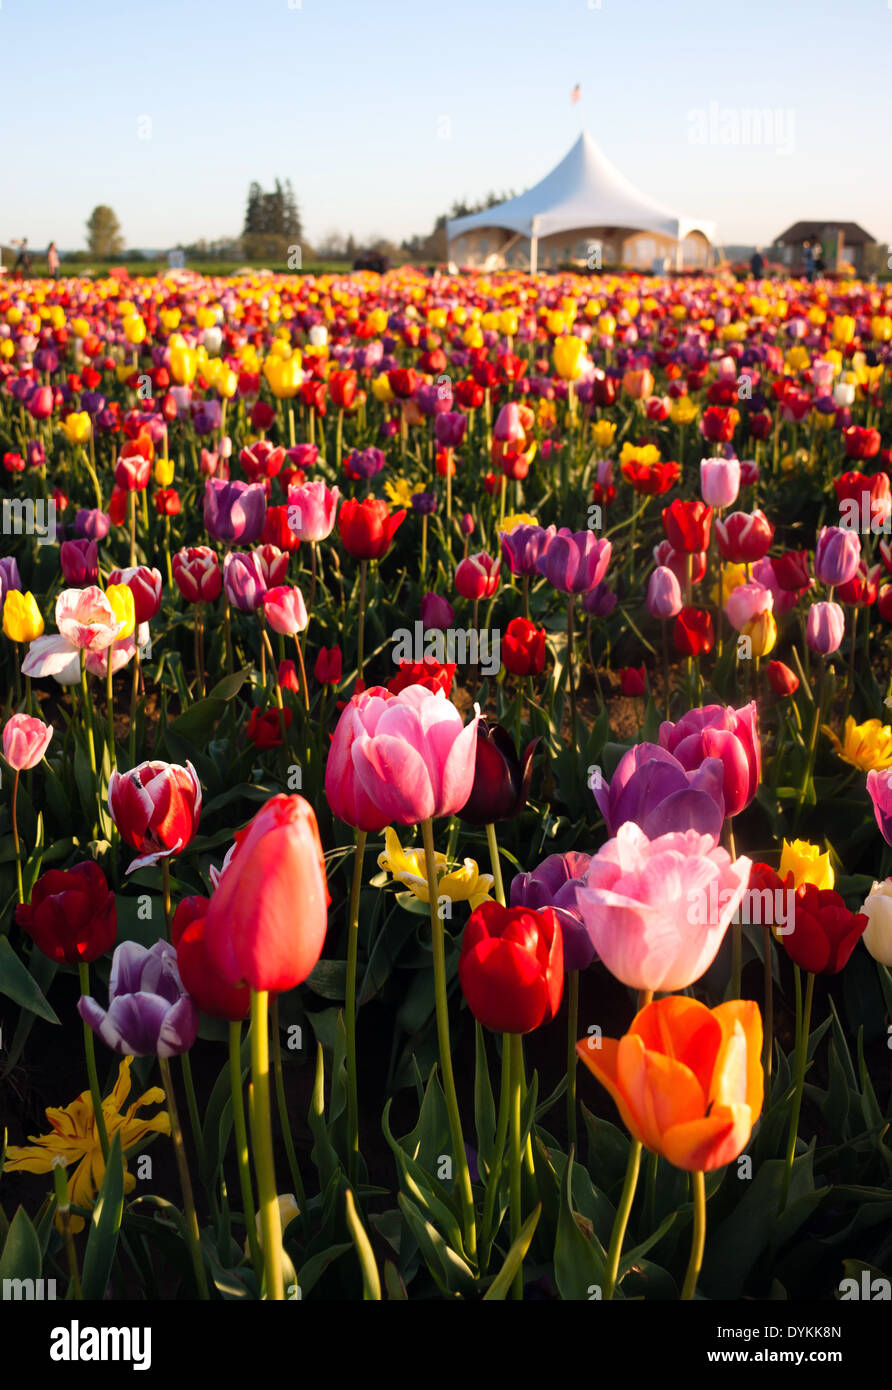 Composición vertical de un gran campo lleno de tulipanes listo para cosechar Foto de stock